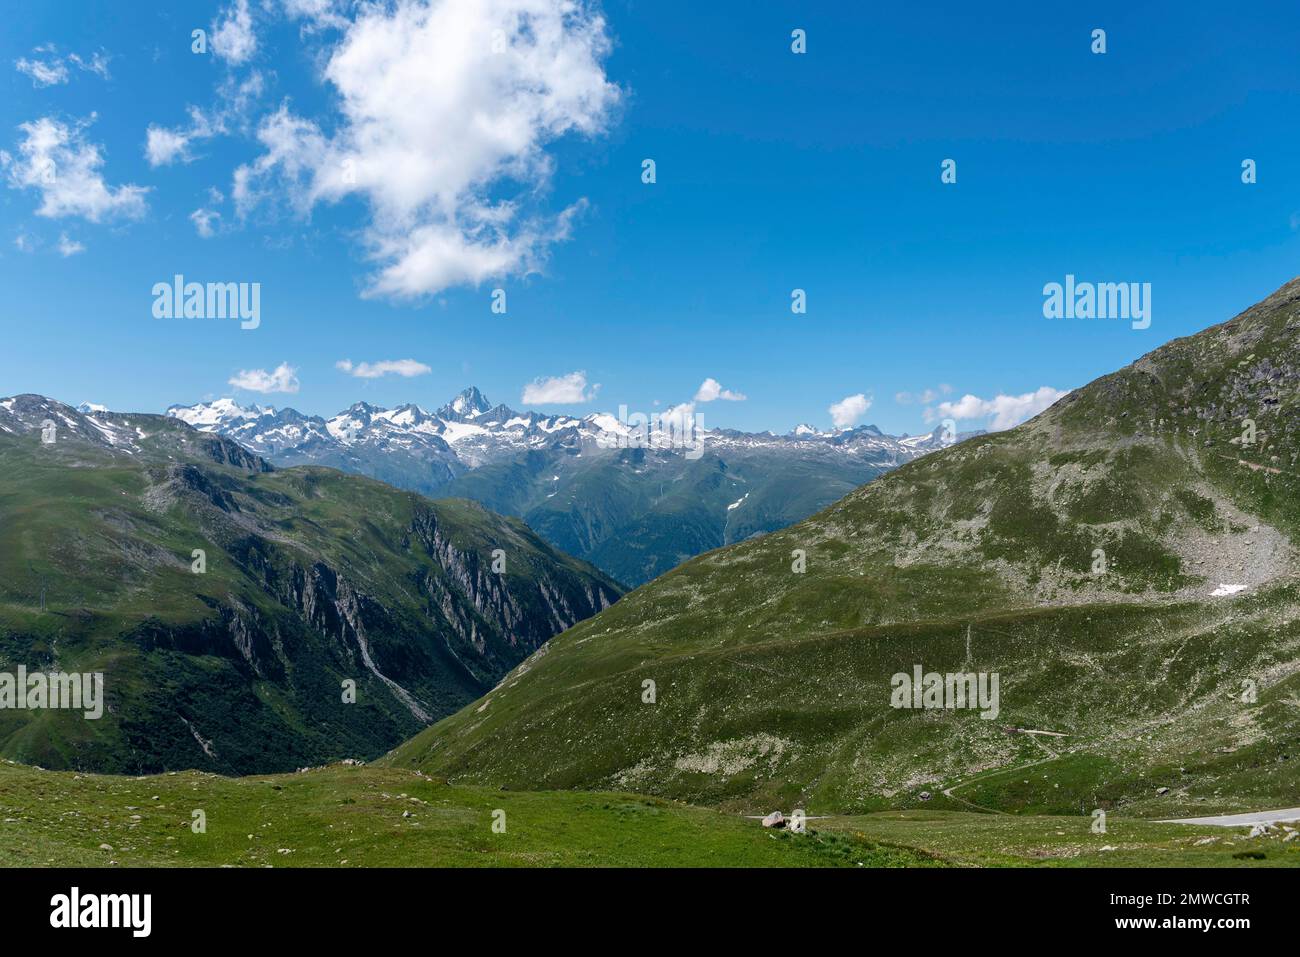 Alpine landscape near the Nufenen Pass with the Finsteraarhorn in the background, Ulrichen, Valais, Switzerland Stock Photo